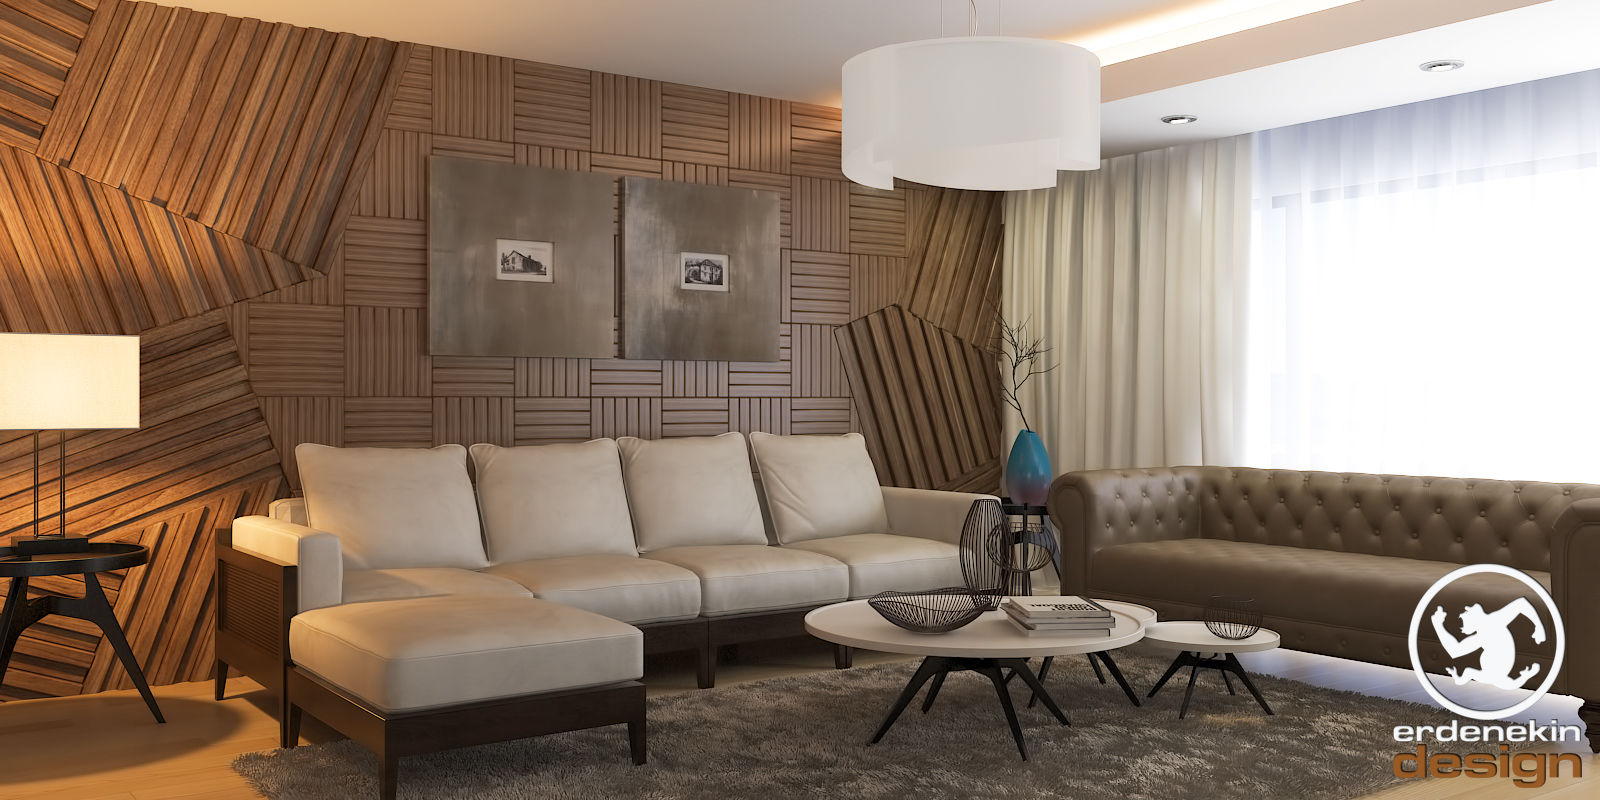 New Anka Residence, Erden Ekin Design Erden Ekin Design Salas de estilo moderno